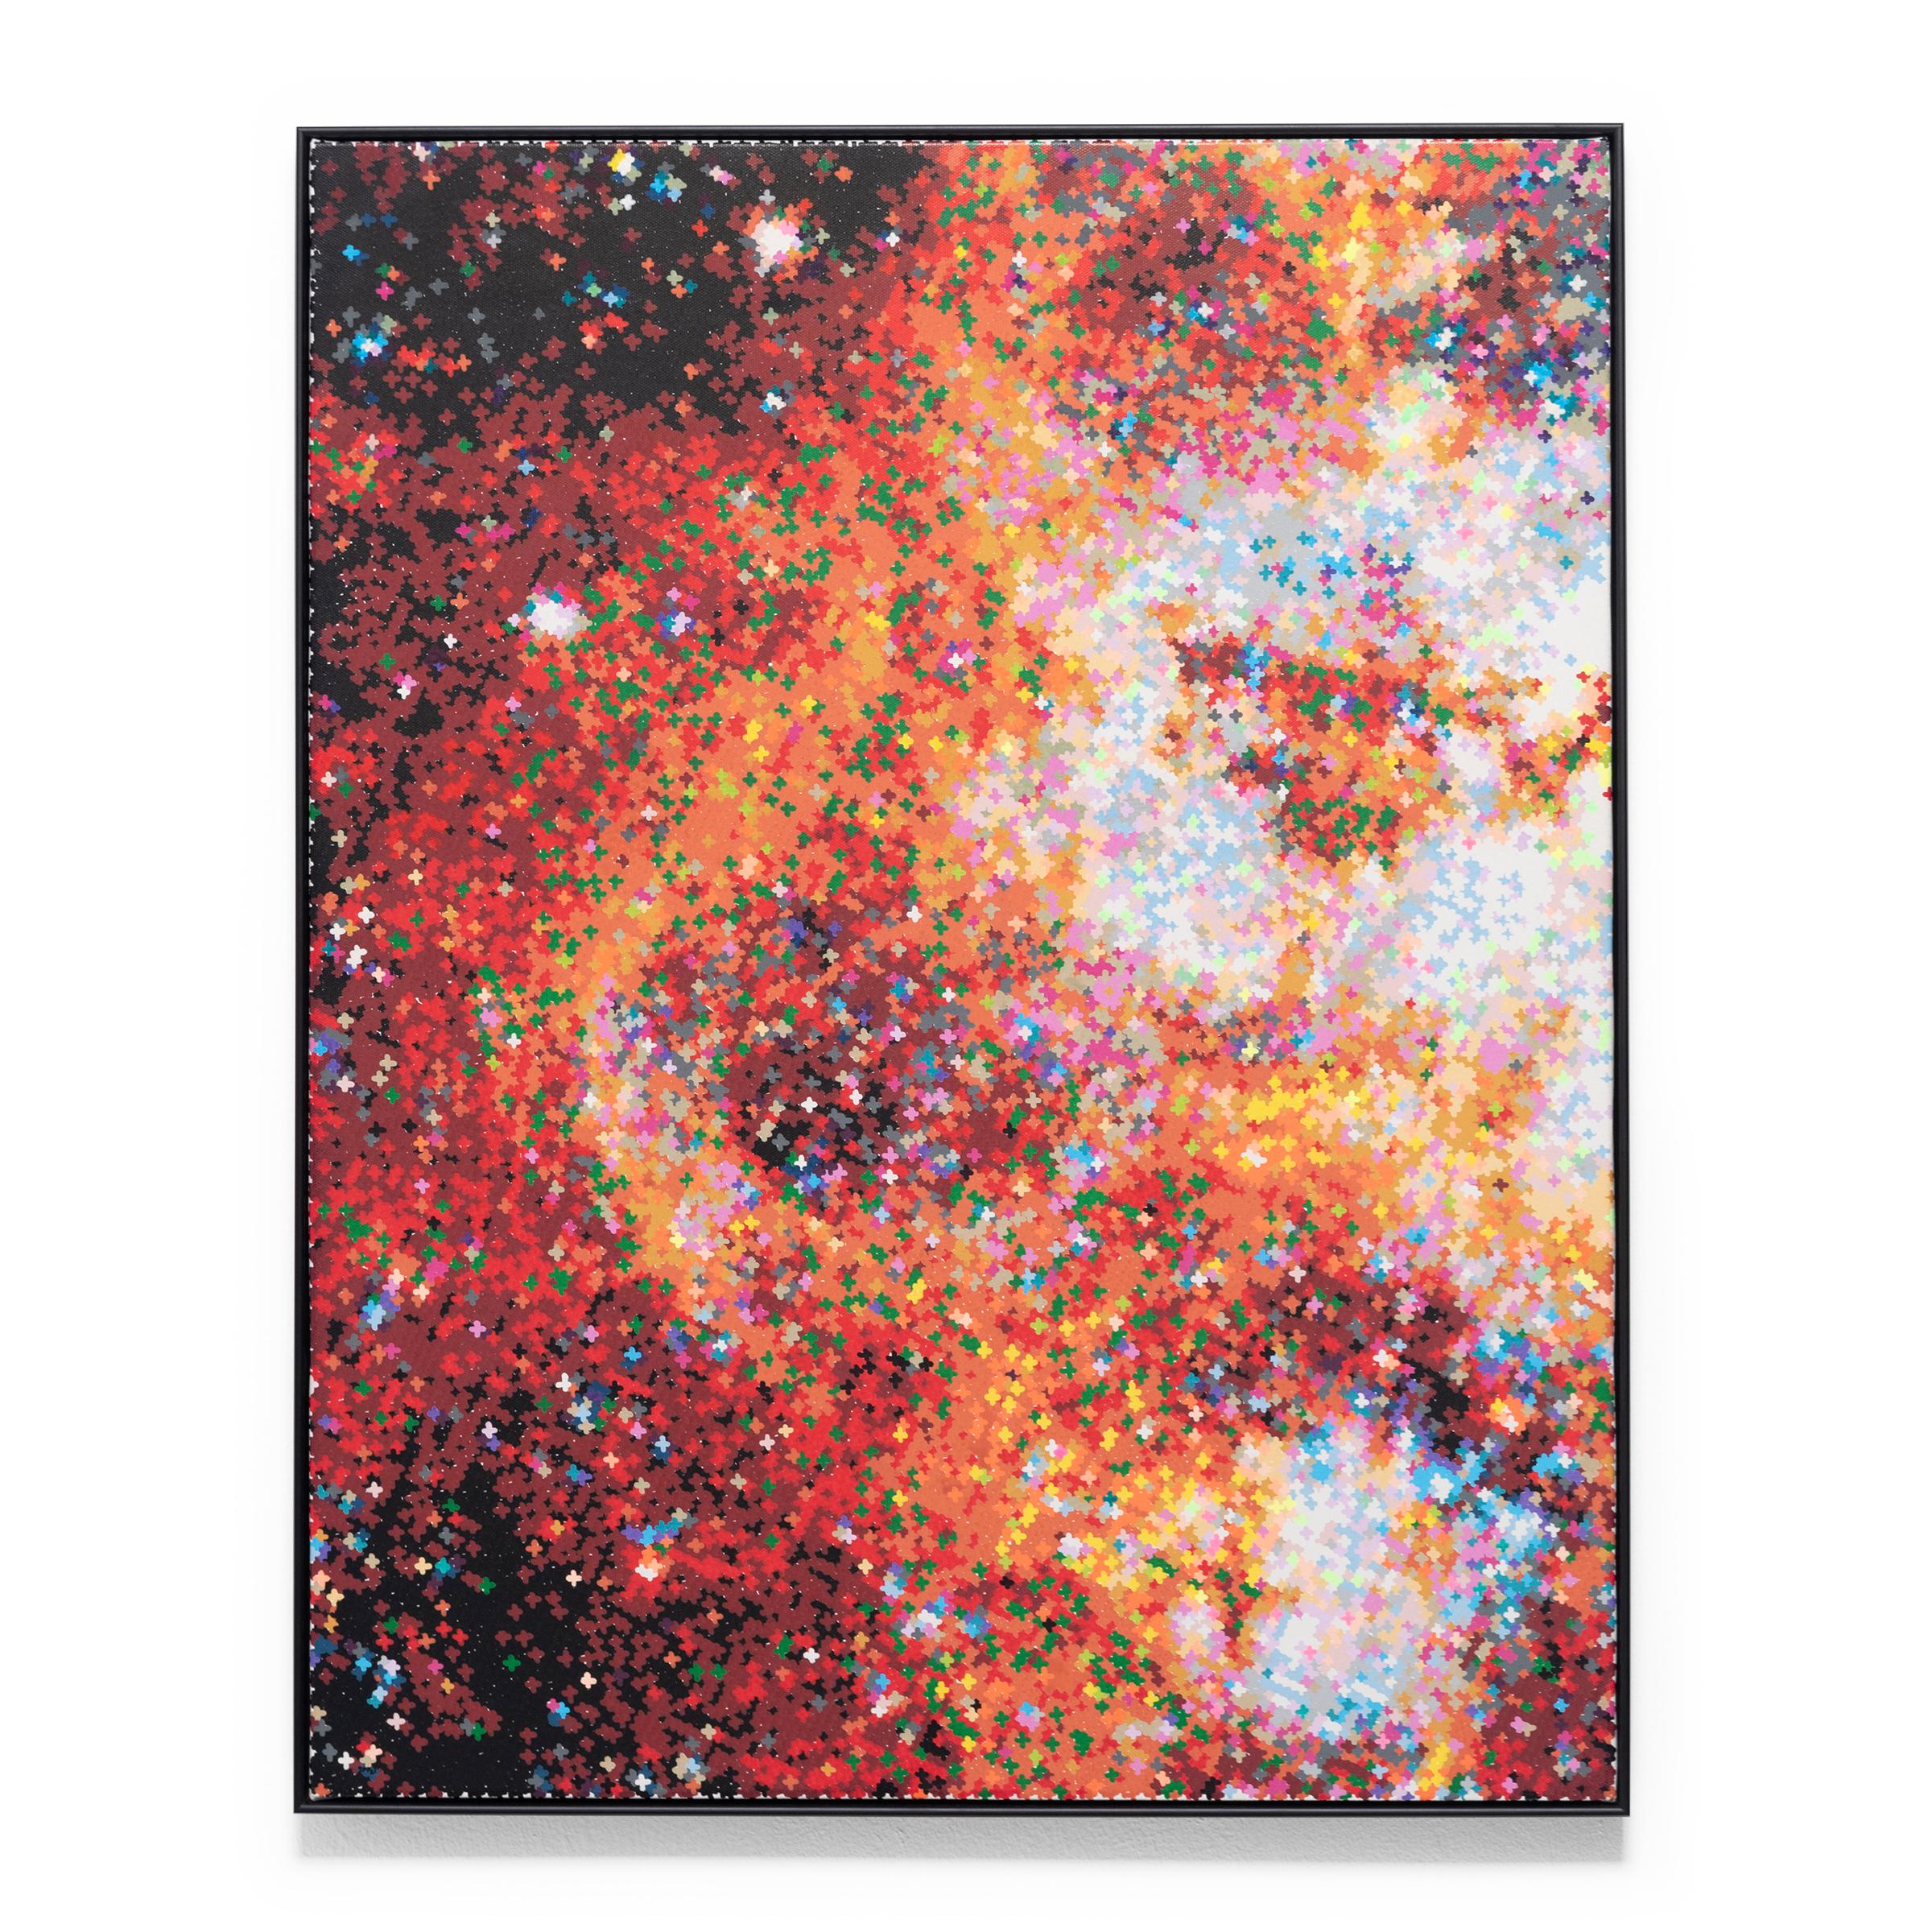 « Study for Tarantula Nebula », acrylique sur toile, 2021 - Painting de Jan Pieter Fokkens